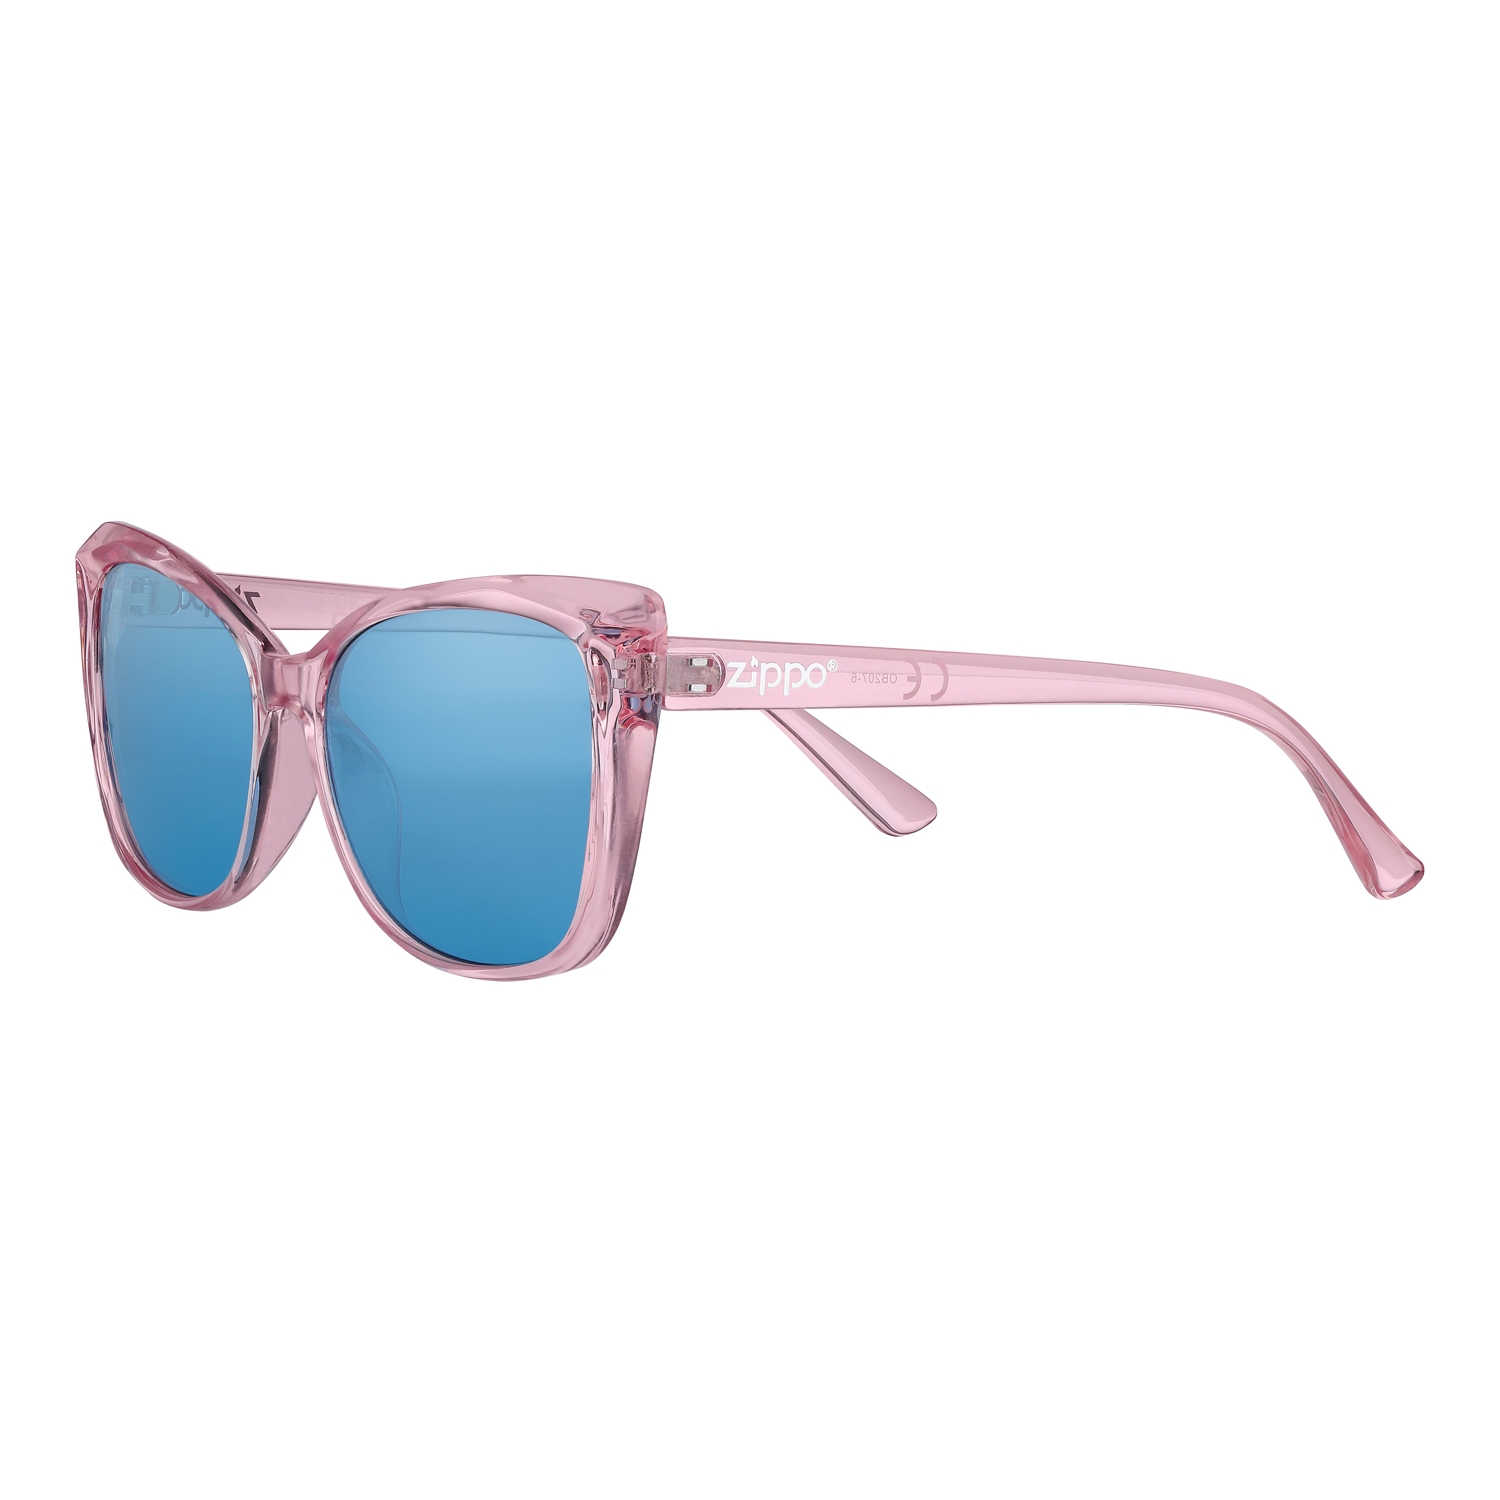 Очки солнцезащитные ZIPPO, женские, розовые, оправа из поликарбоната, голубые линзы, пластик